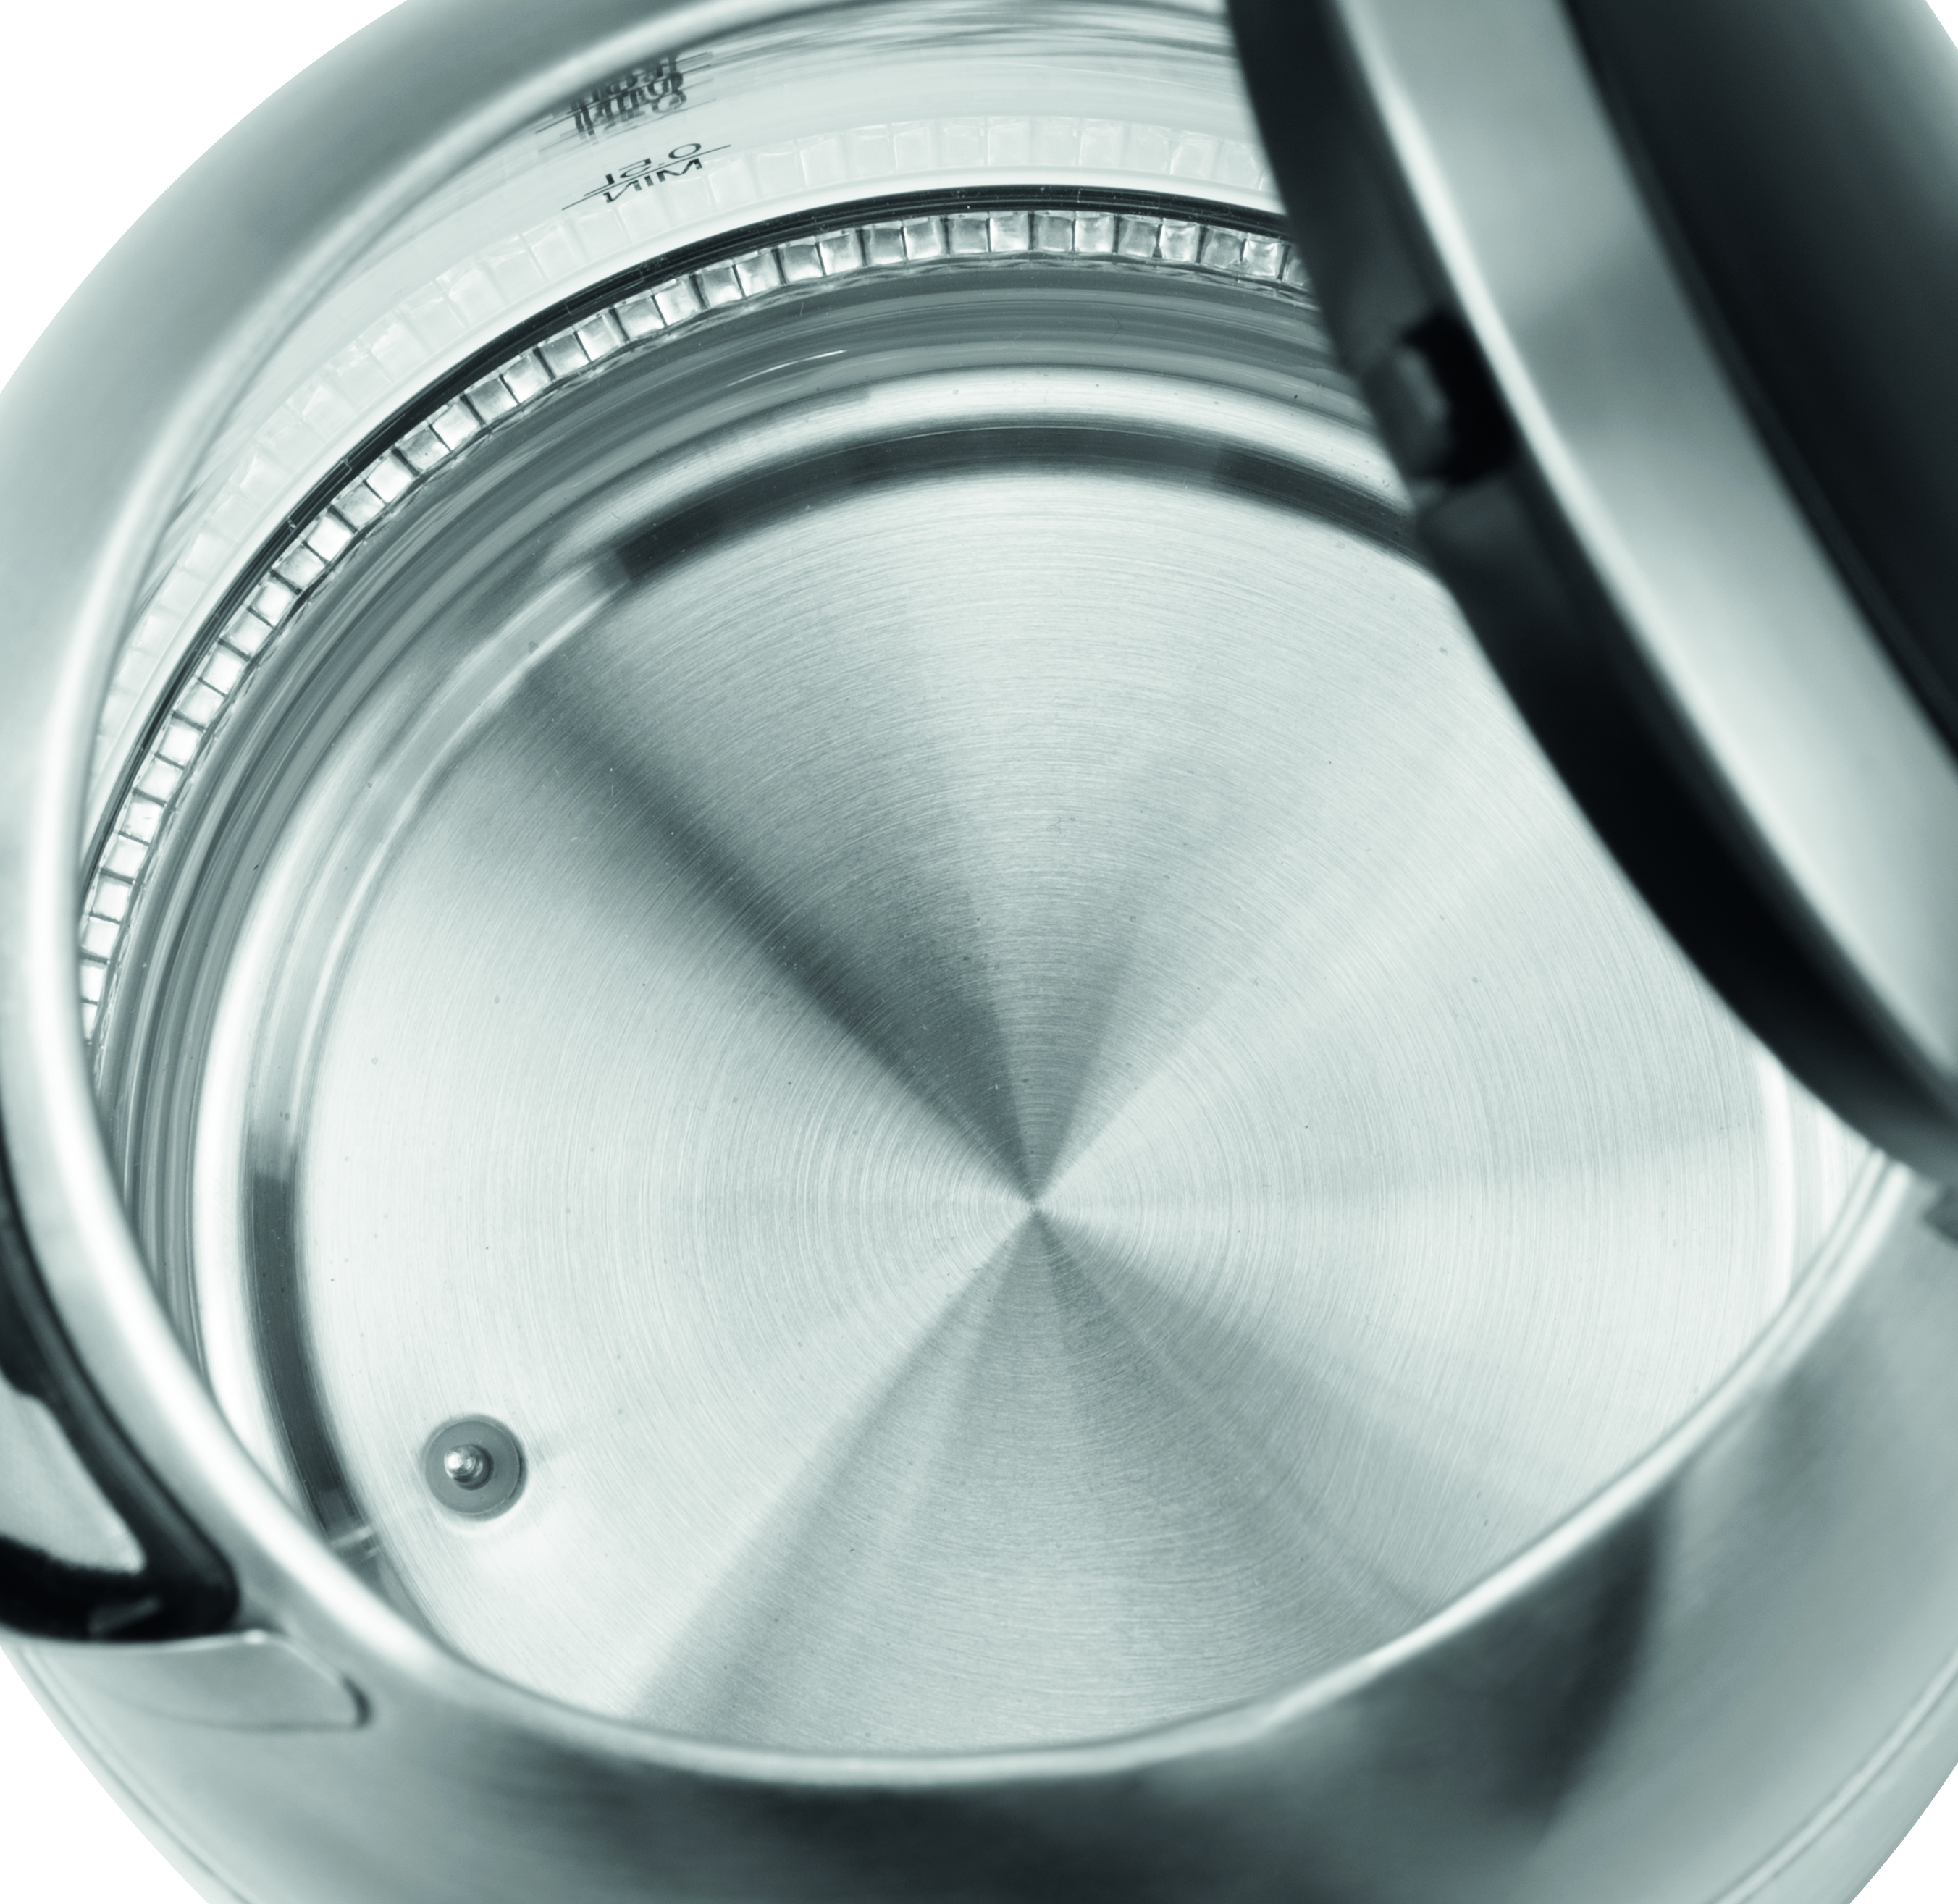 ECG RK | Warmhaltefunktion | | rostfreie Temperatureinstellung Glass Wasserkocher Water 1781 heater, | | stainless